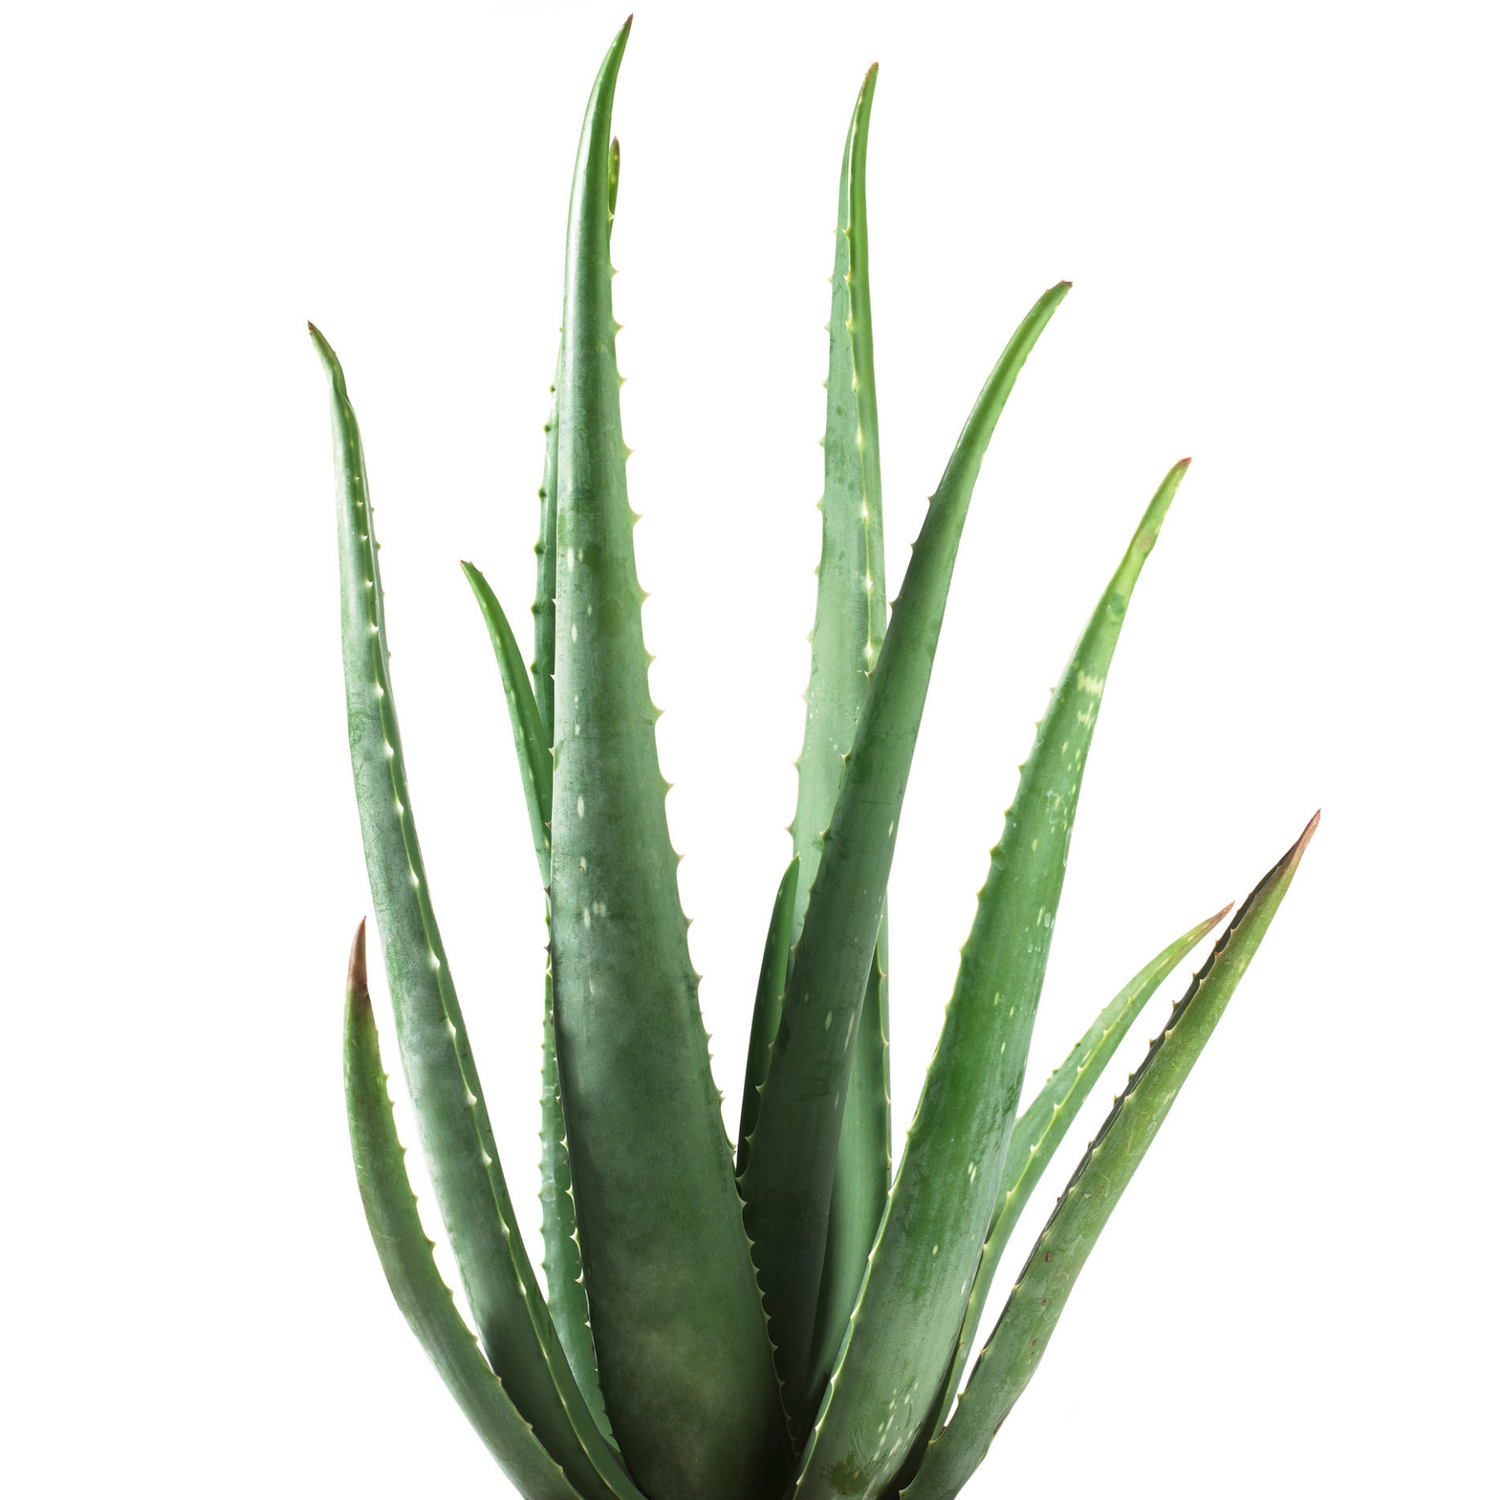 How to Grow an Aloe Vera Plant